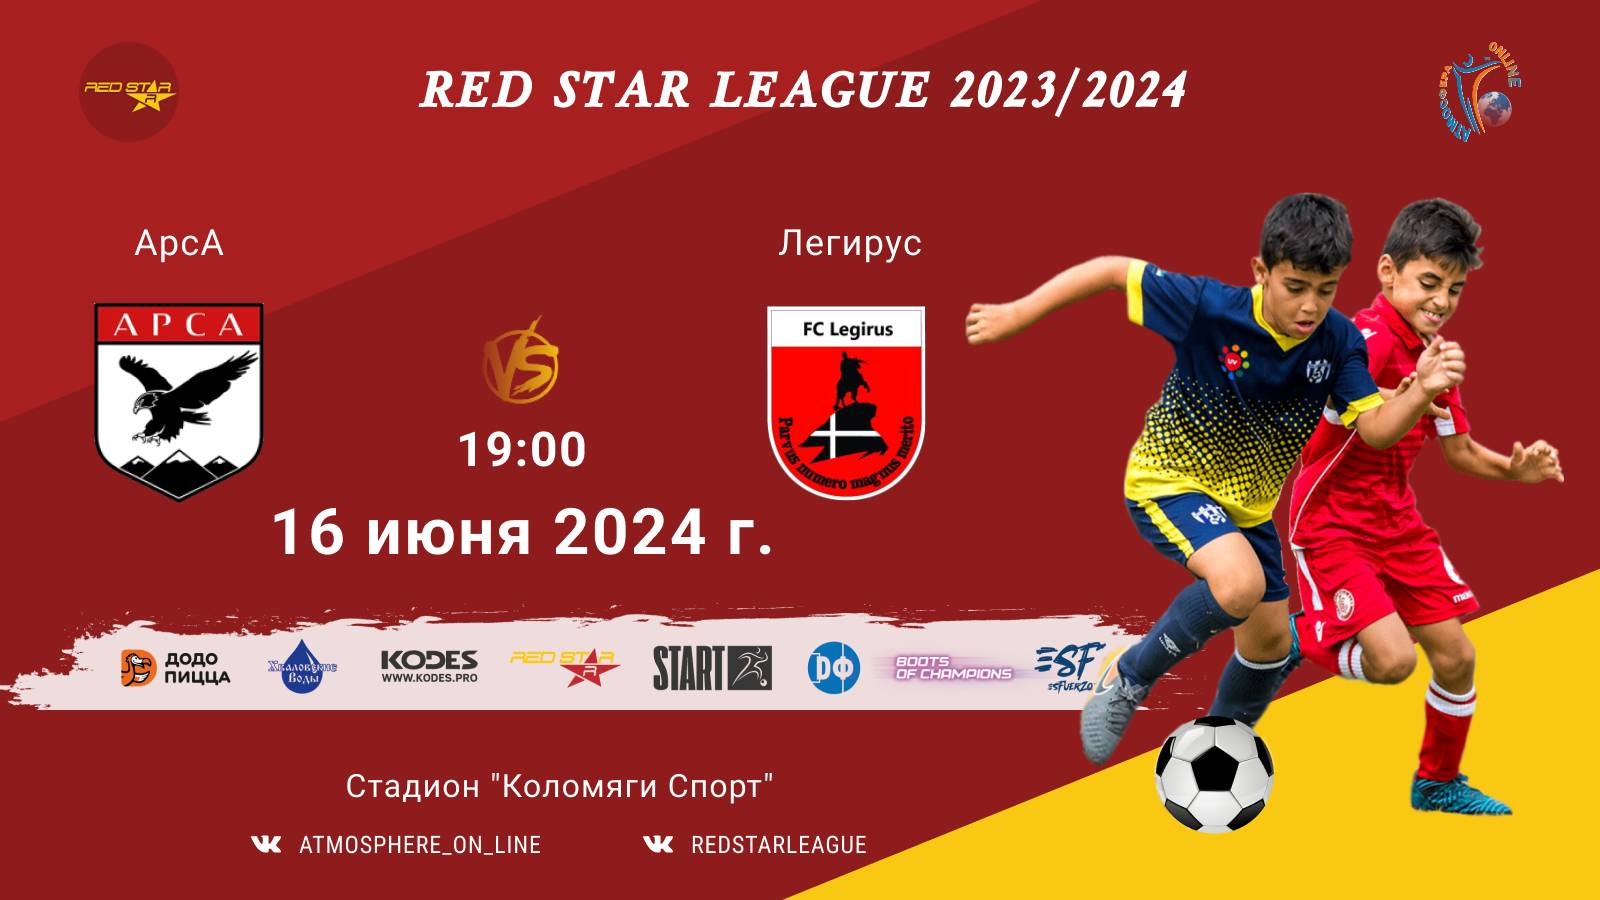 ФК "АрсА" - ФК "Легирус"/Red Star League, 16-06-2024 19:00